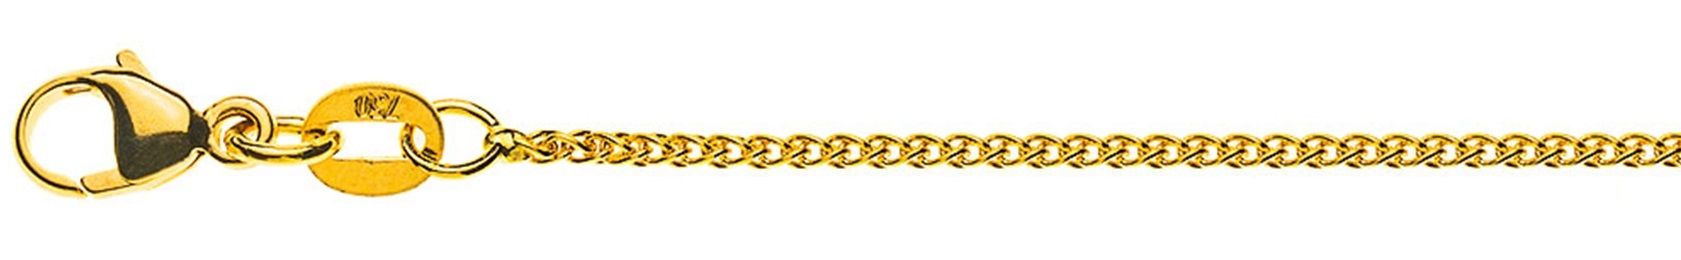 AURONOS Prestige Halskette Gelbgold 18K Zopfkette 50cm 1.2mm